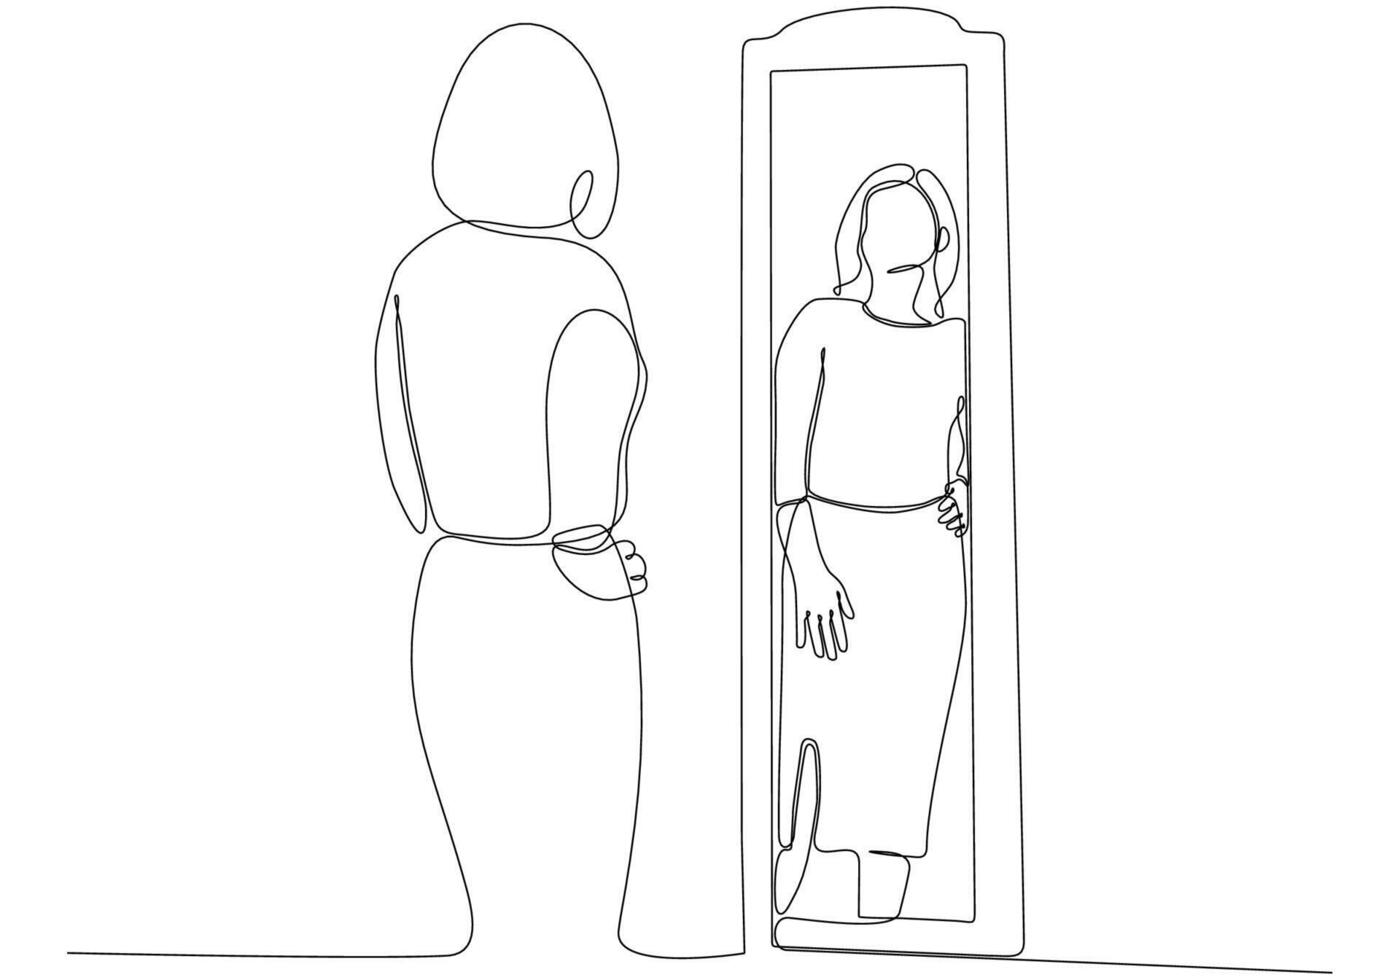 desenho de linha contínua de mulher na ilustração vetorial de espelho vetor